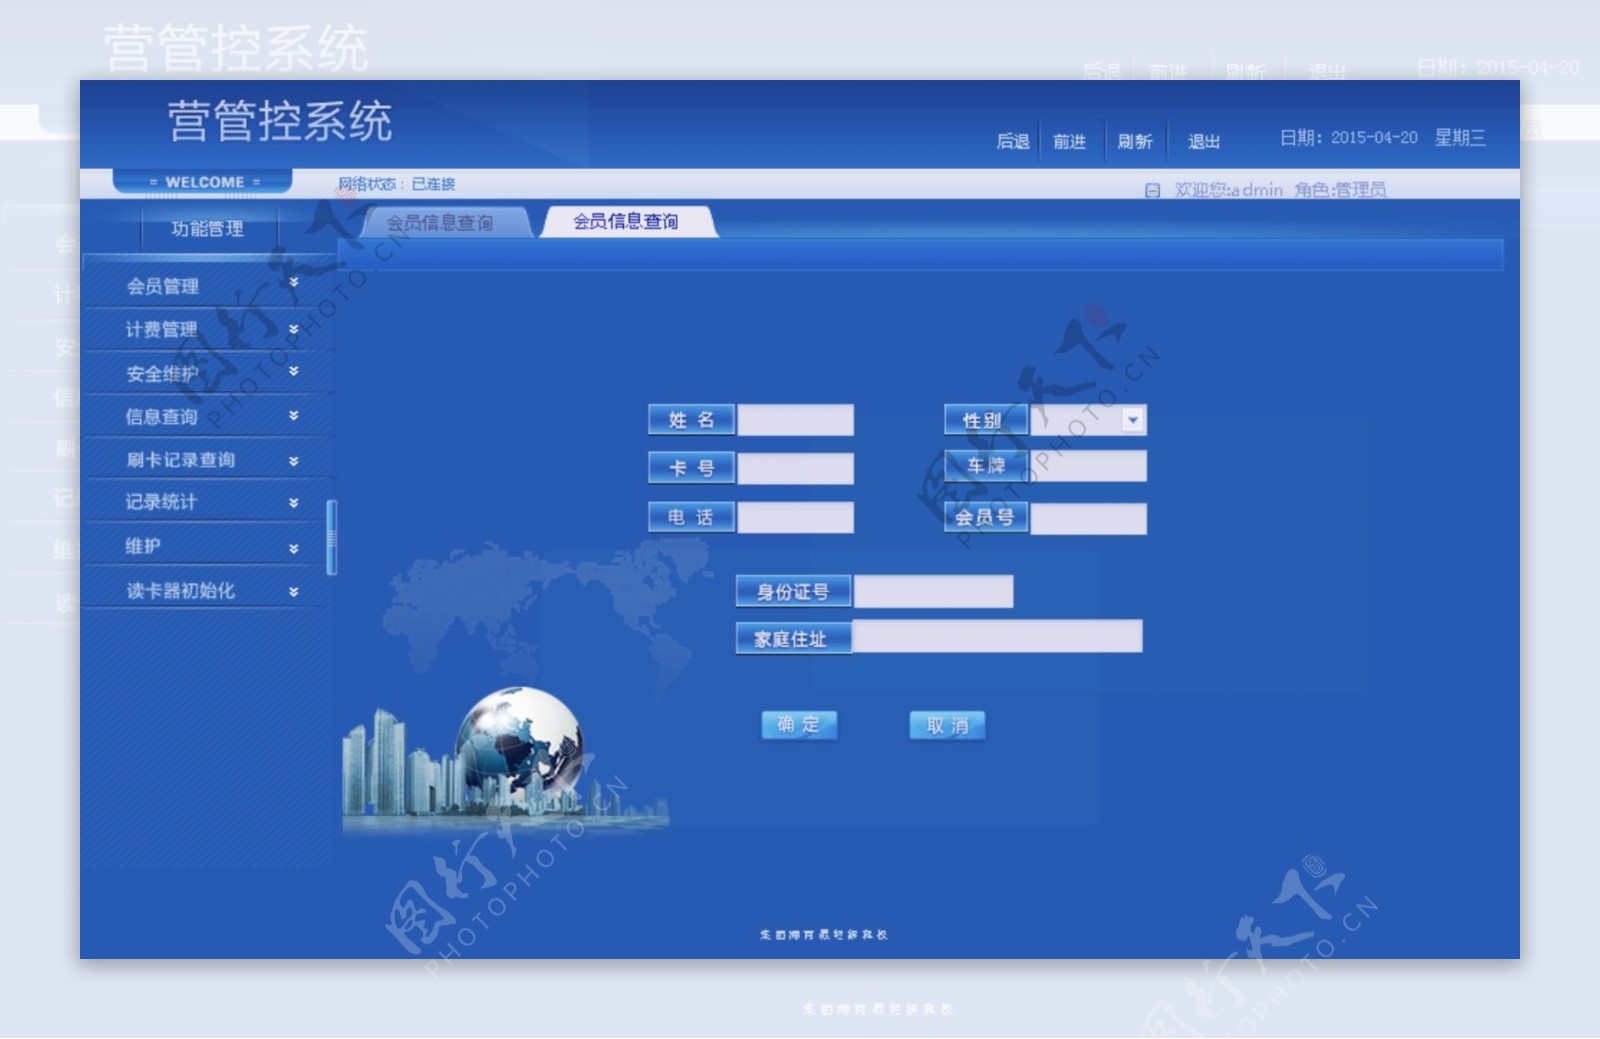 UI系统蓝色系统模板图片